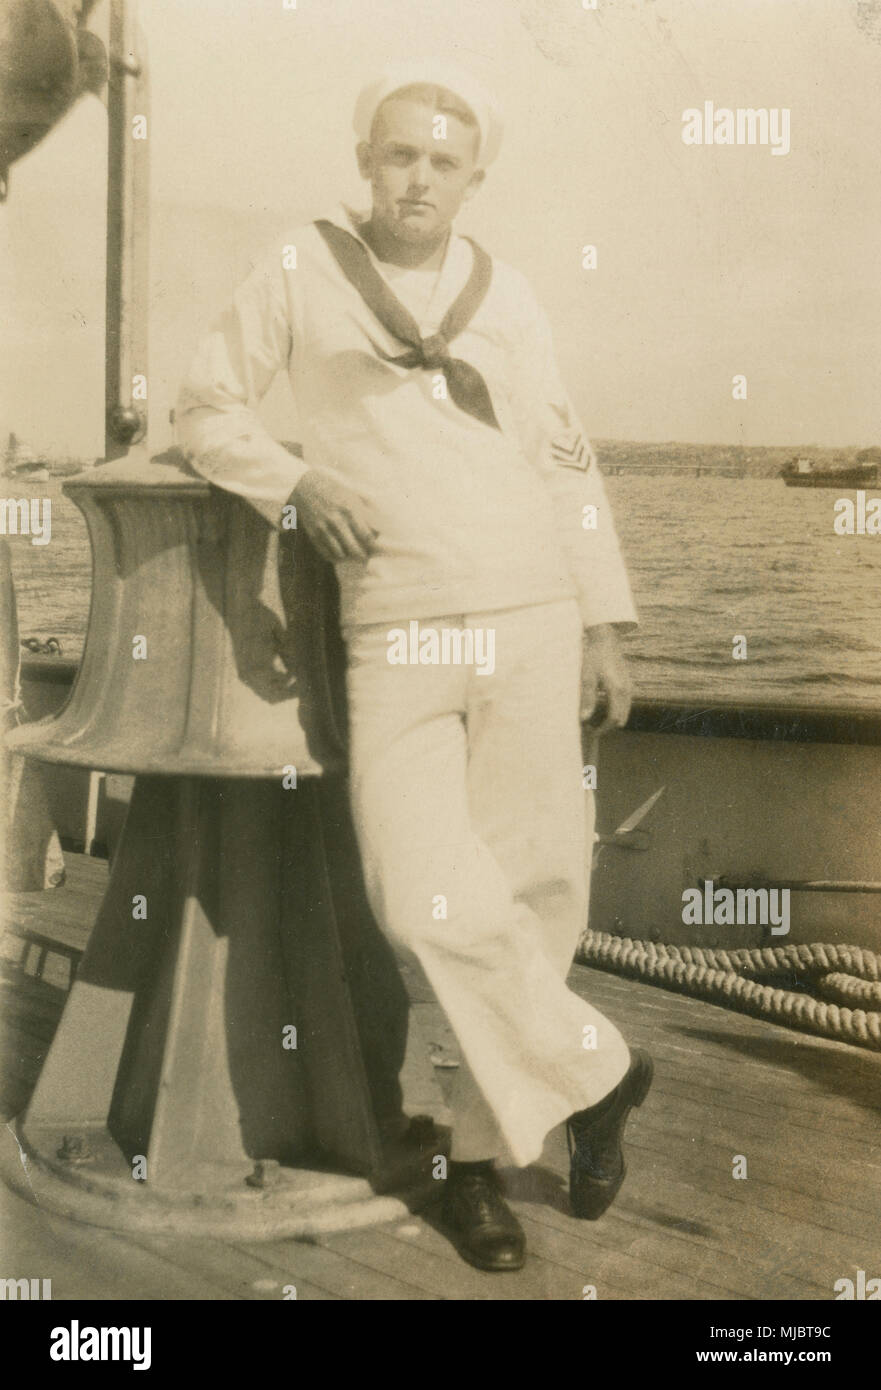 Antique c1922 fotografia, visualizzare a bordo della nave cavo USCG Pequot. Un marinaio in una US Coast Guard abito bianco uniforme, poggiando su quello che sembra essere il grande argano elettrico sul ponte. Fonte: originale stampa fotografica. Foto Stock